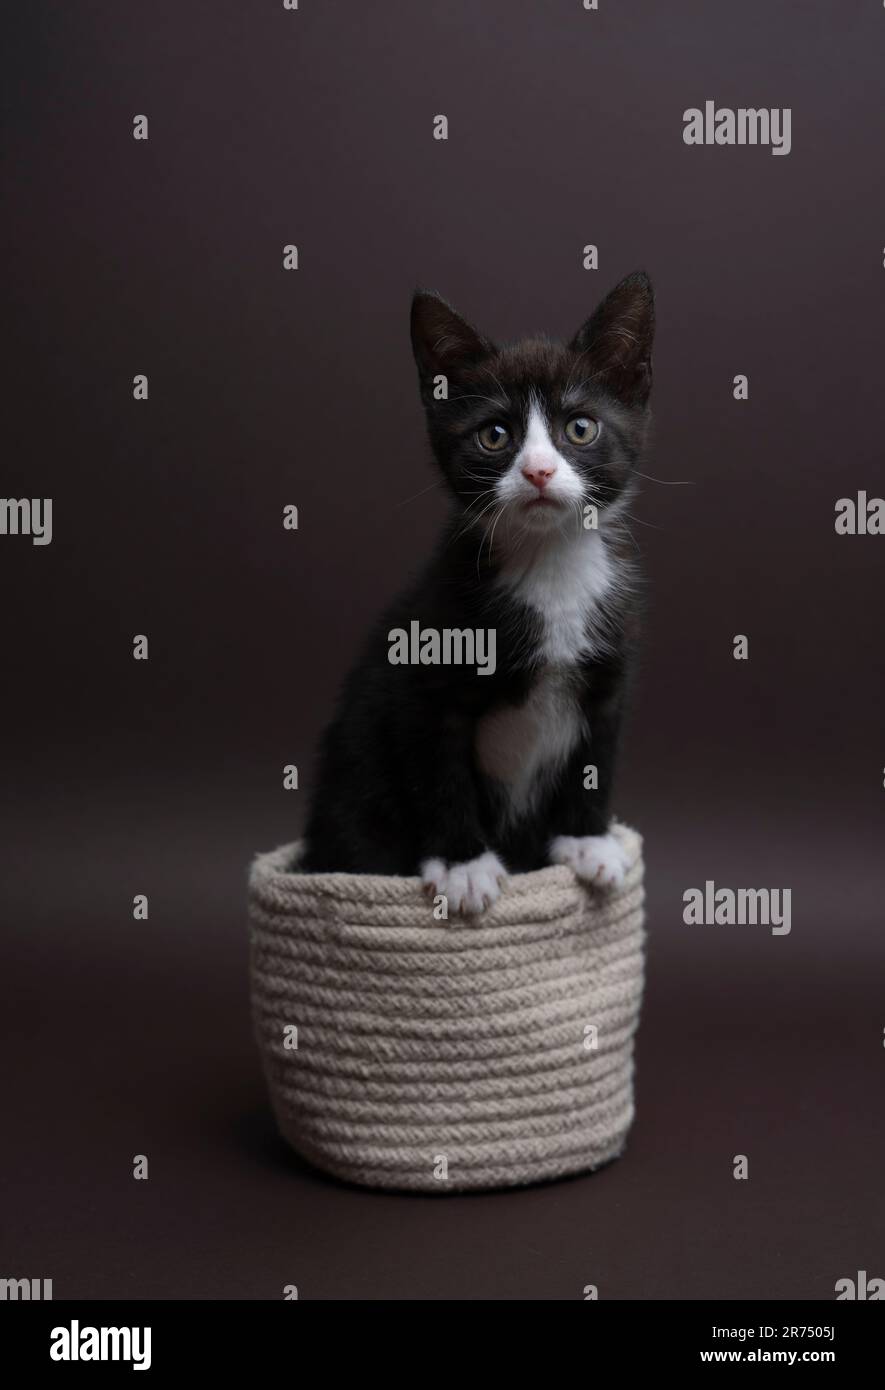 Fotografia verticale di un gattino da tuxedo all'interno di un piccolo cestino. Il gatto guarda teneramente la macchina fotografica, il colore di sfondo è marrone scuro Foto Stock